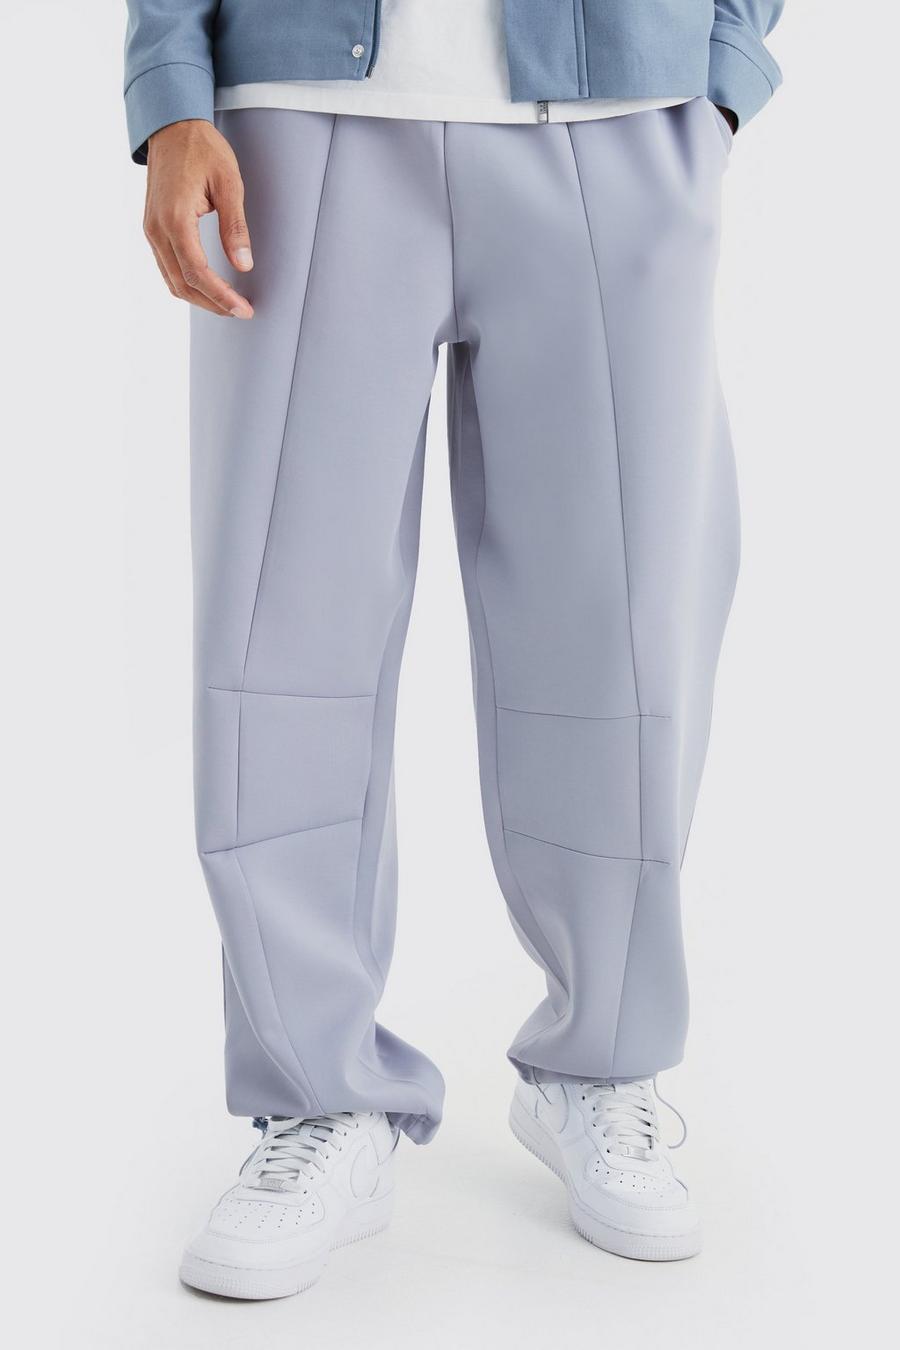 Pantalón deportivo oversize de scuba con detalle de costuras, Light grey grigio